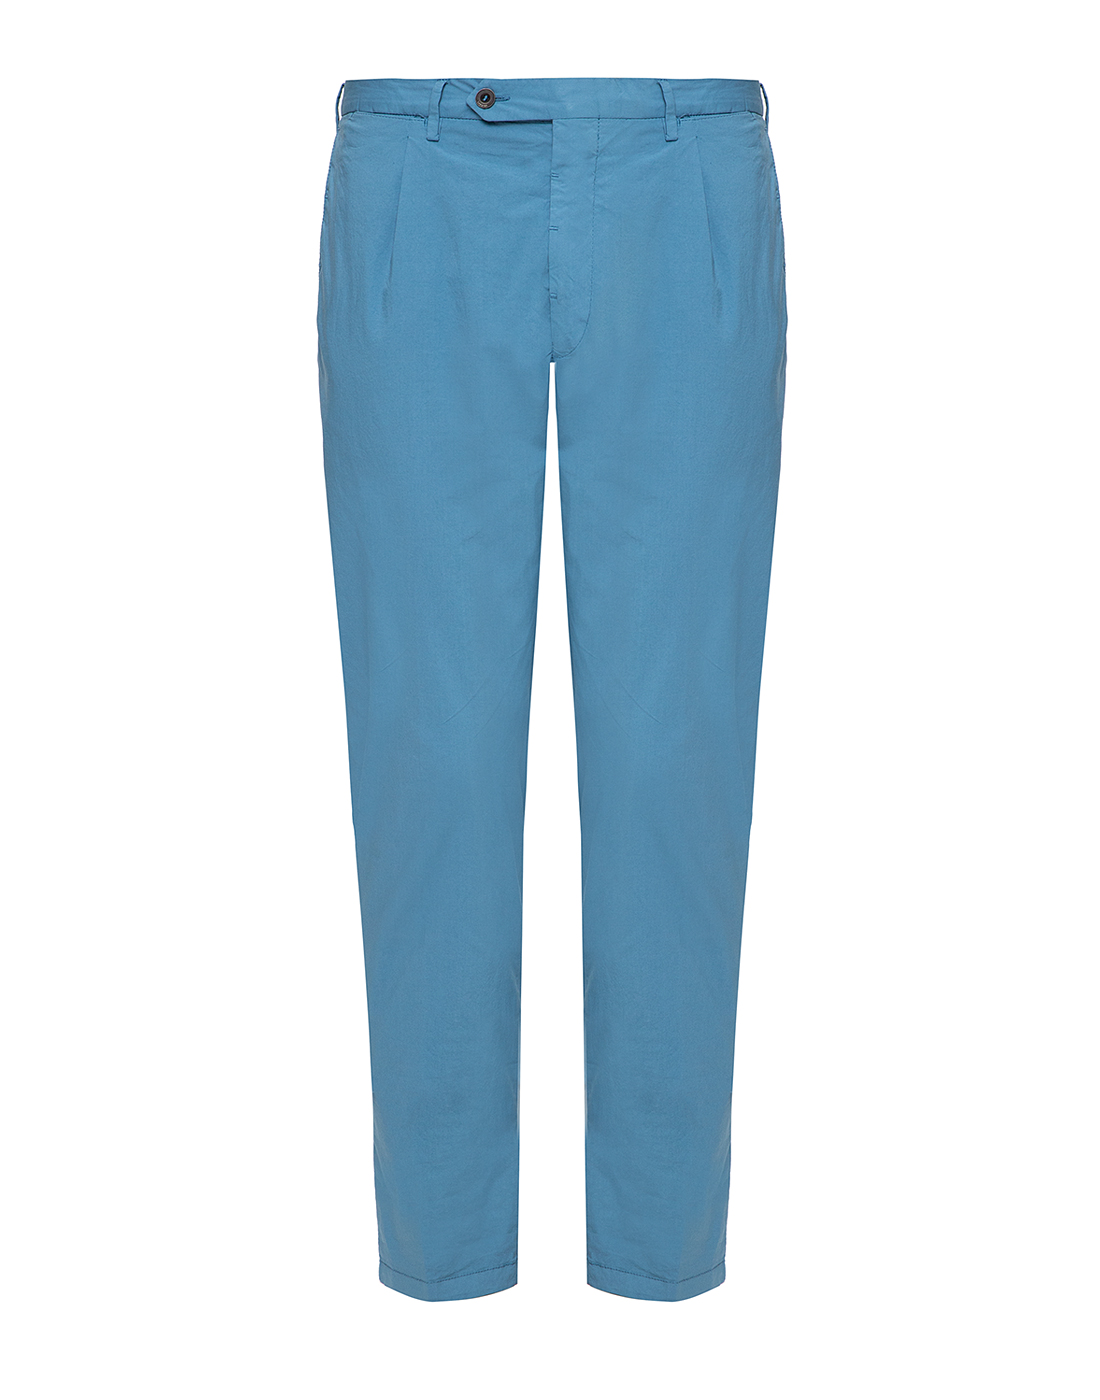 Мужские голубые брюки Lardini SEISOHO5 EI54091 800-1